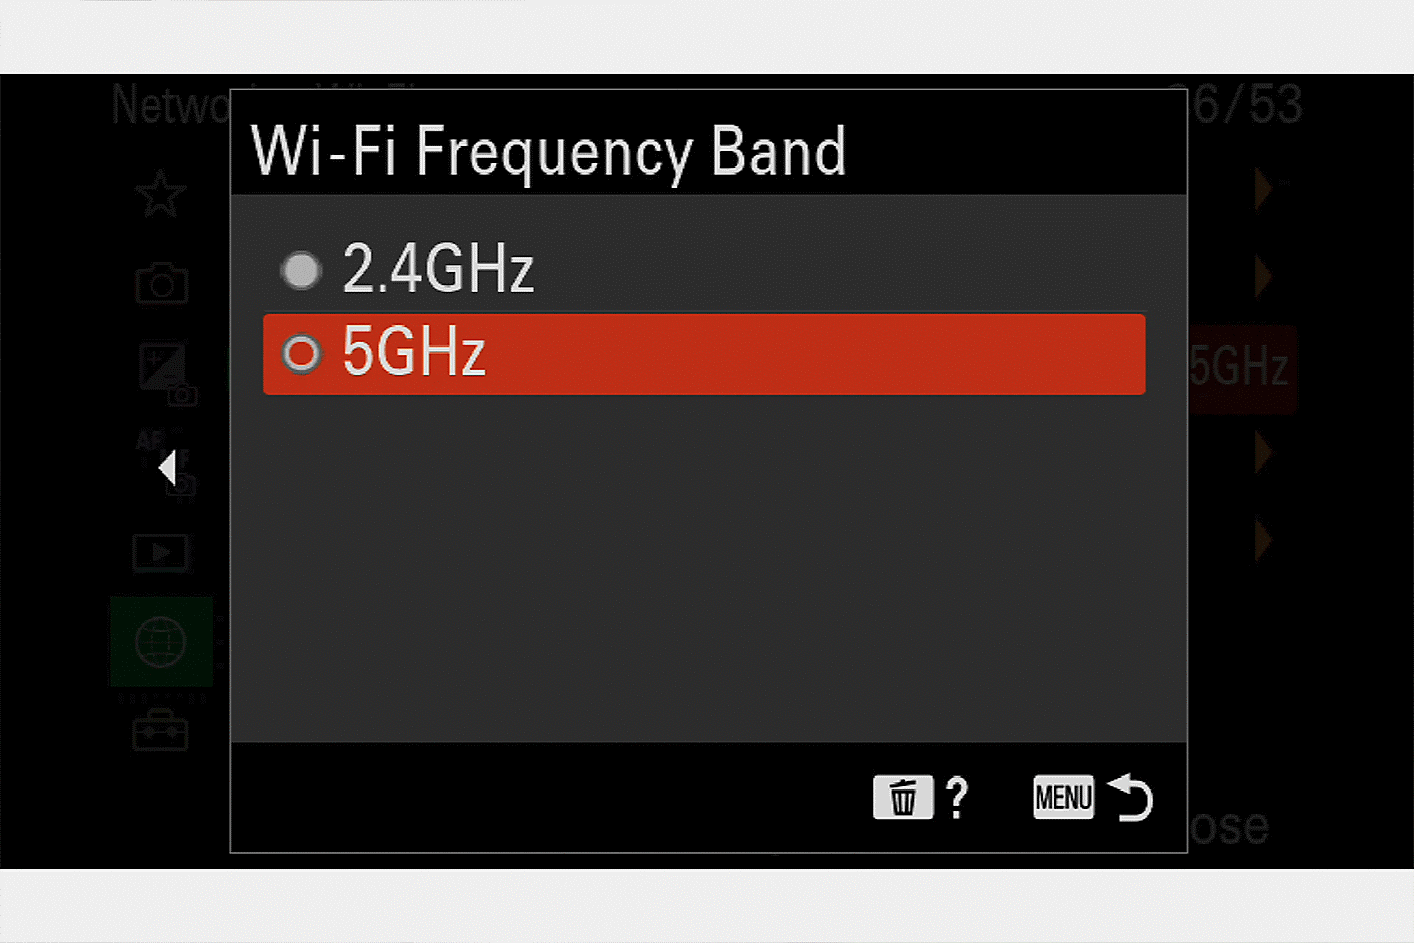 選取 5 GHz 和 2.4 GHz 設定的選單顯示幕